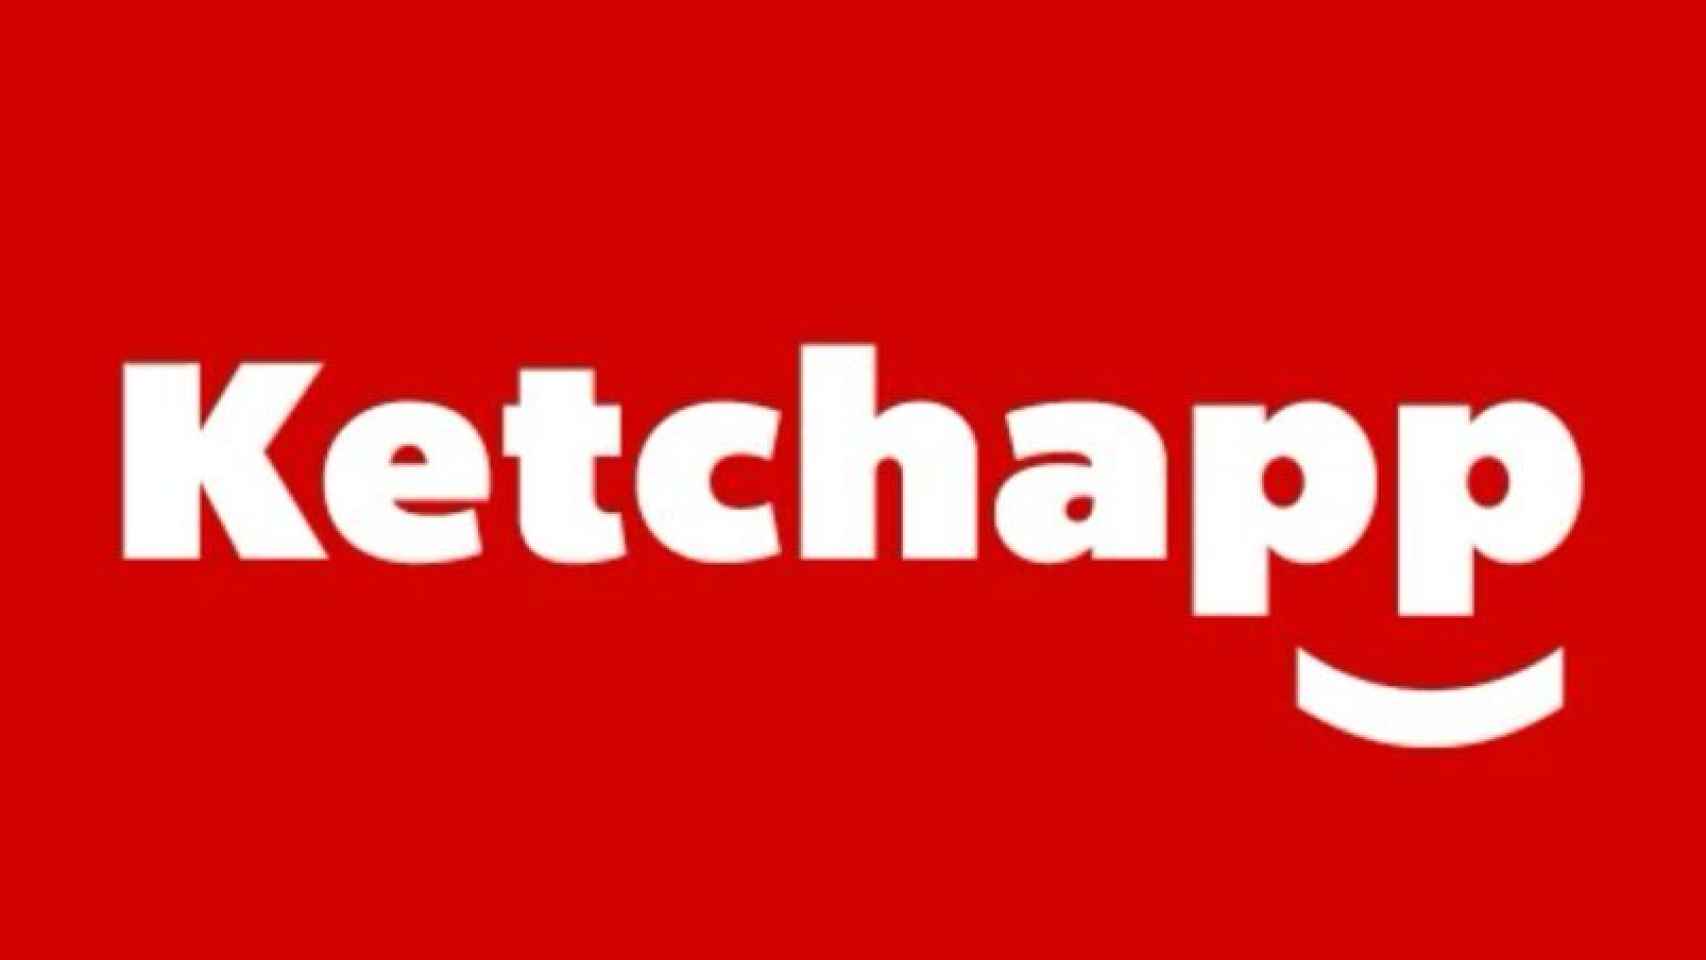 Ketchapp, casi 150 juegos en Android agotando el género casual